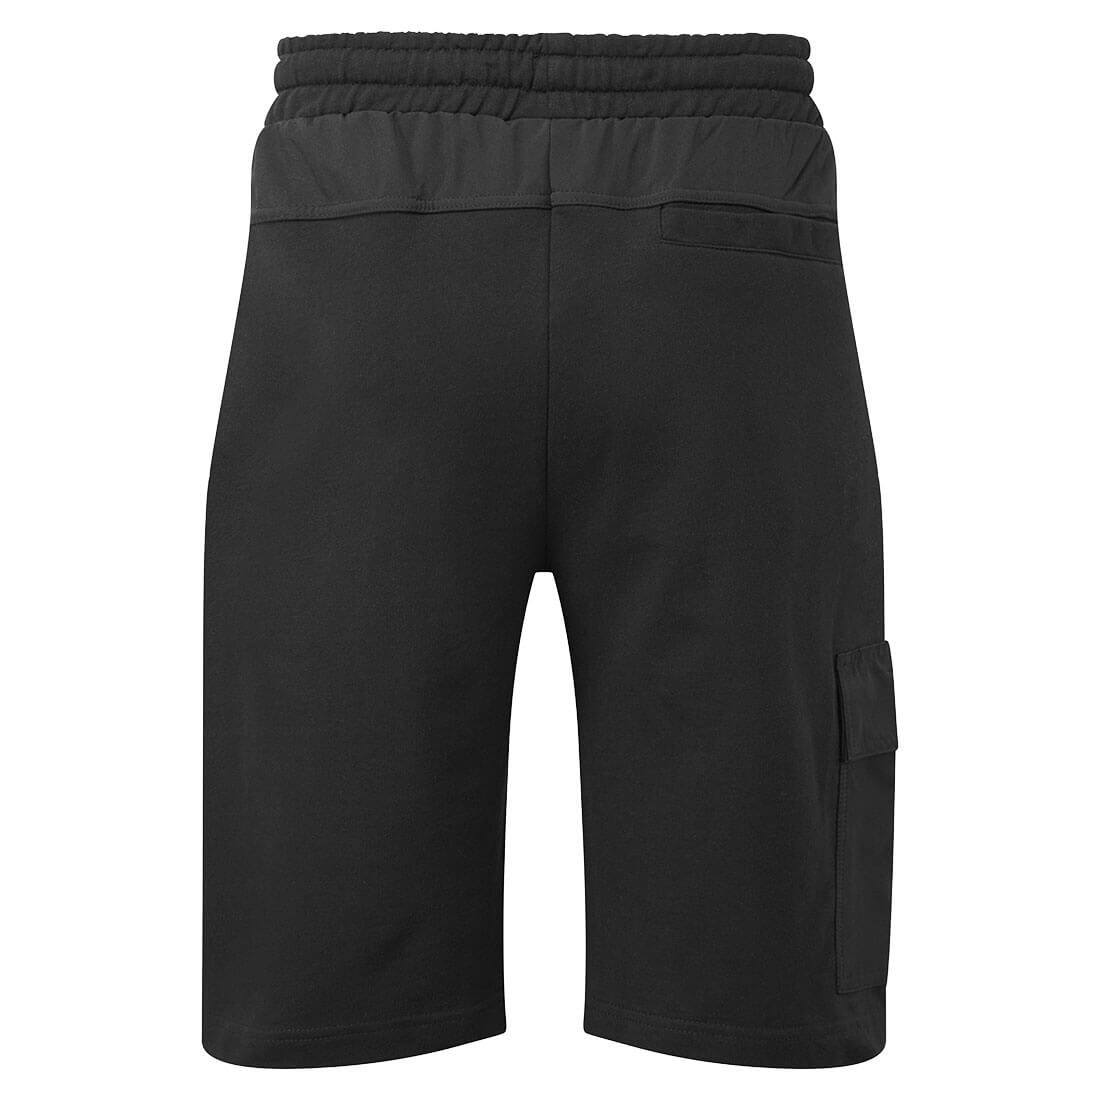 Pantalon KX3 Cargo - Les vêtements de protection